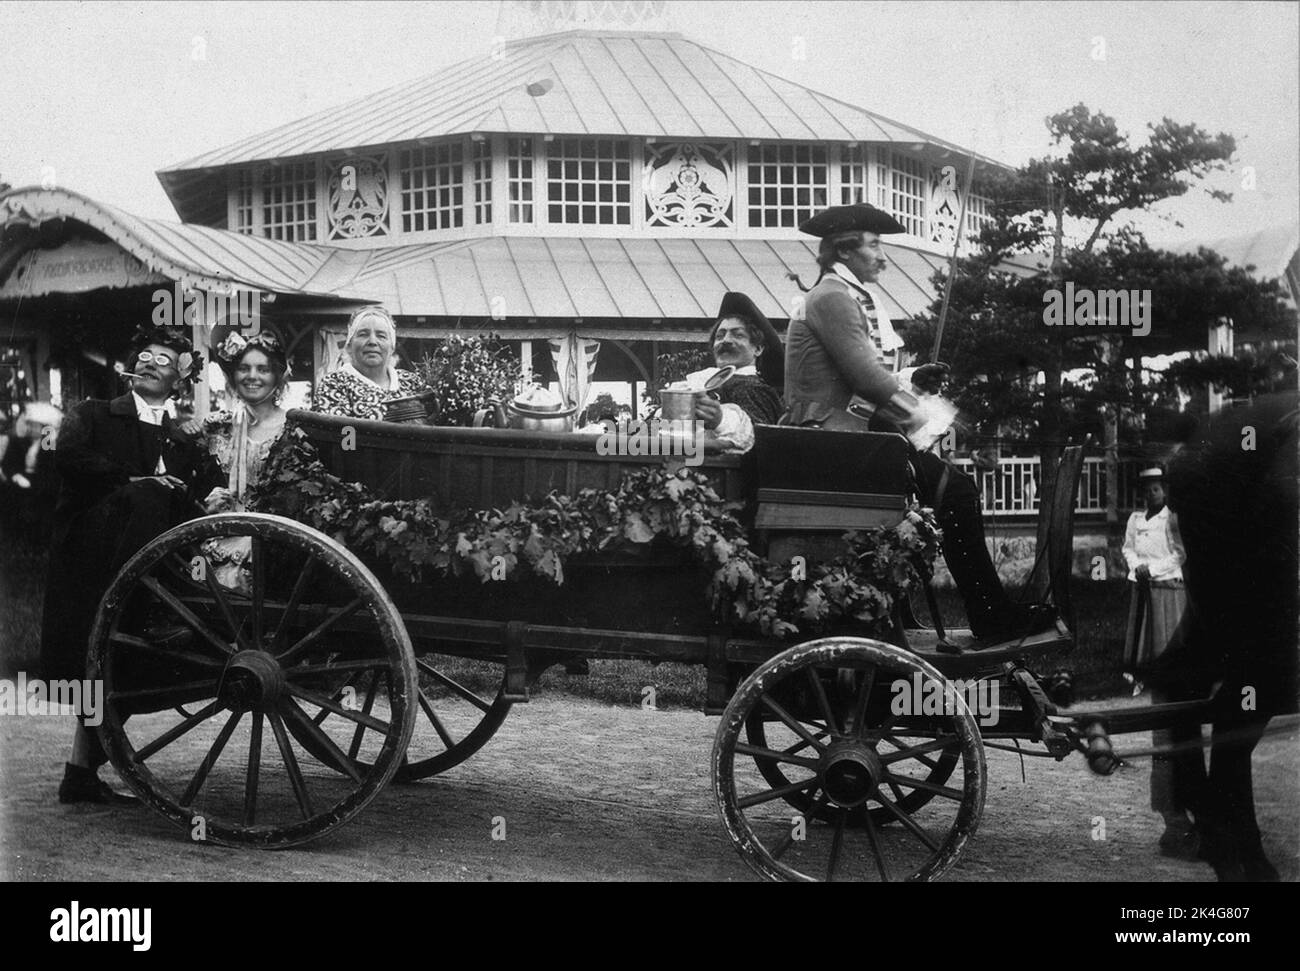 Skansen. Fête de printemps 1899. Une équipe dans un chariot ouvert. Des gens heureux s'assoient dans la calèche, un cousin s'assoit sur le cousin. Pays nordiques Banque D'Images